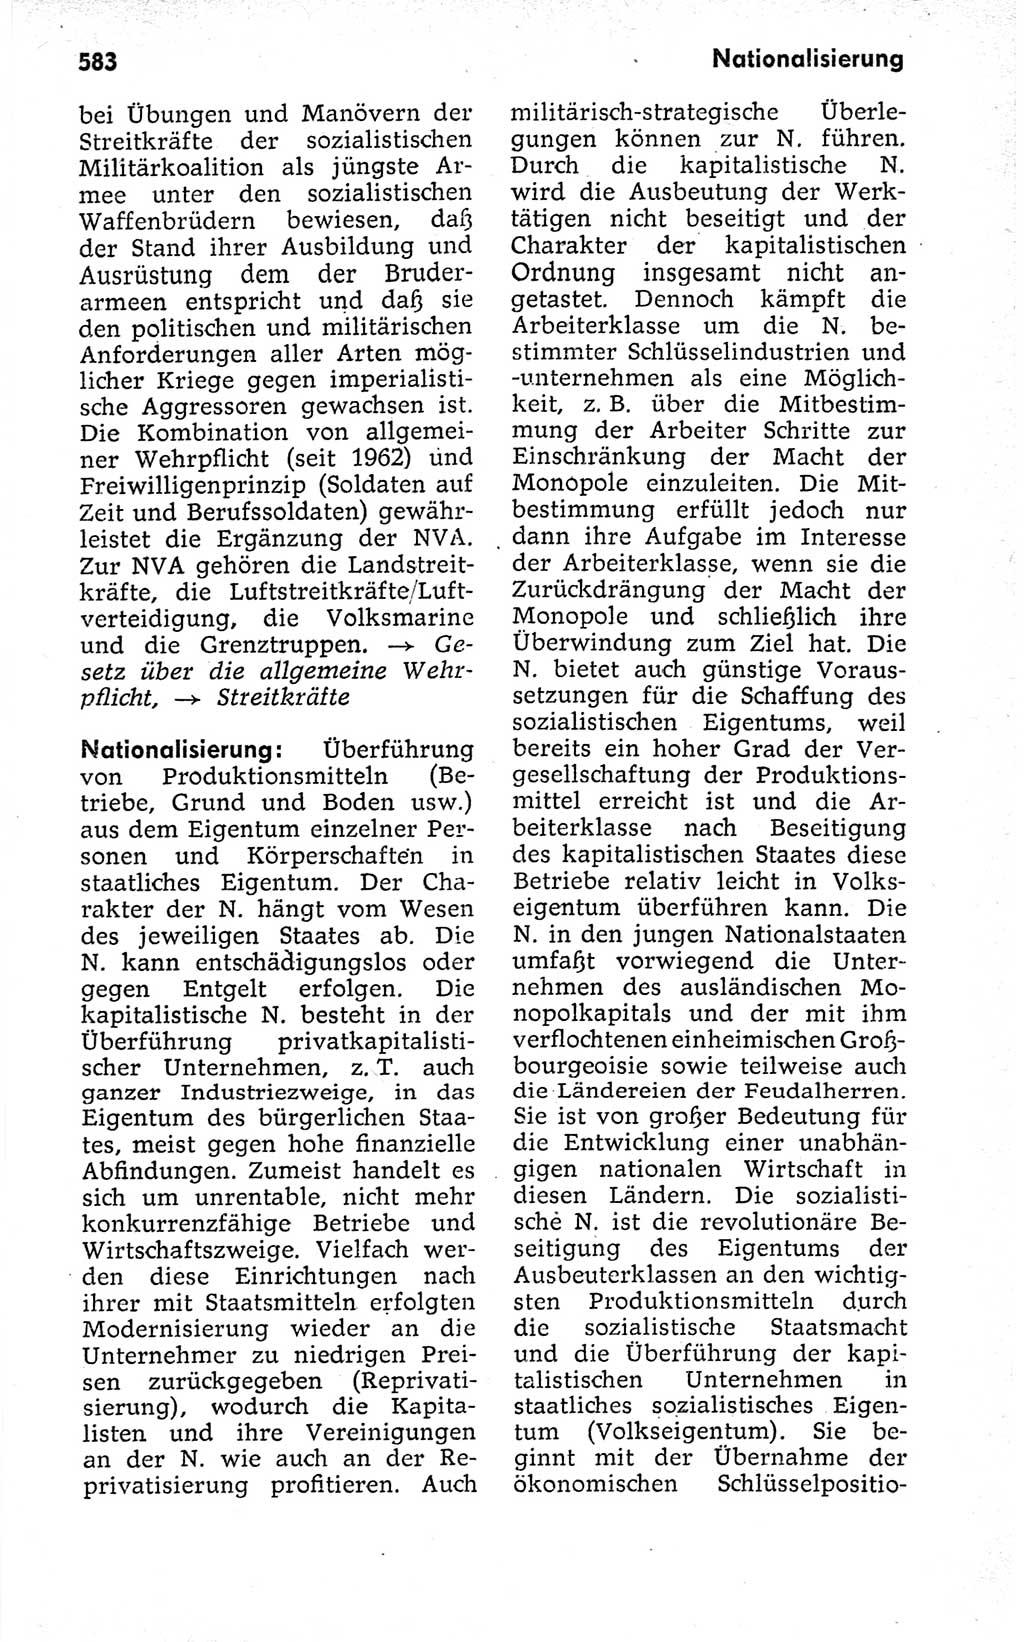 Kleines politisches Wörterbuch [Deutsche Demokratische Republik (DDR)] 1973, Seite 583 (Kl. pol. Wb. DDR 1973, S. 583)